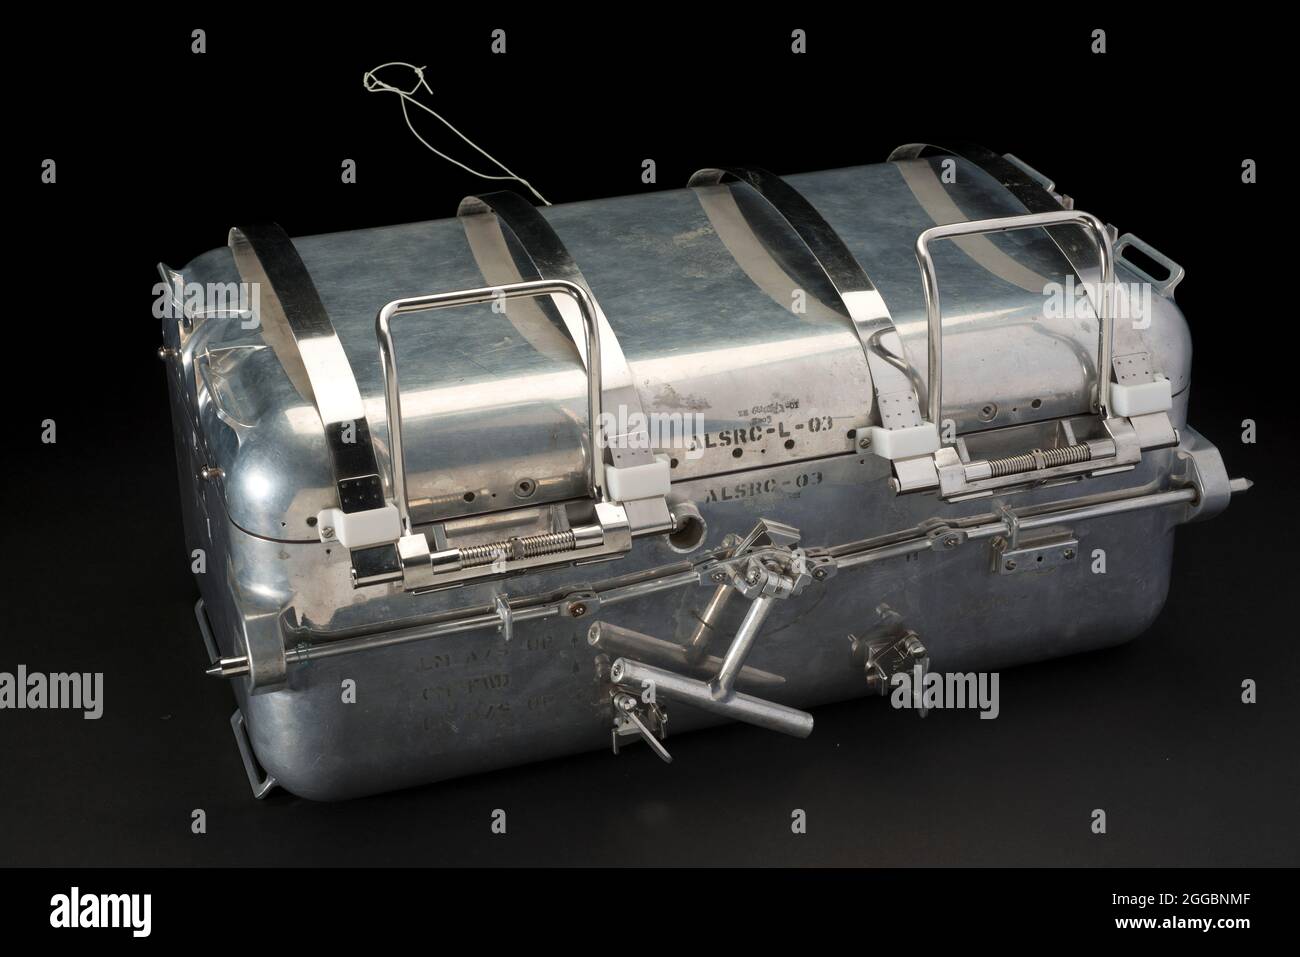 Der Apollo Lunar Sample Return Container (ALSRC) war eine Aluminiumbox mit einer dreifachen Dichtung, die von der Nuclear Division of Union Carbide hergestellt wurde. Es wurde bei Apollo-Mondlandemissionen verwendet, um ein lunares Vakuum um die Proben zu bewahren und sie vor der Schockumgebung des Rückfluges zur Erde zu schützen. Ein Mesh-Futter aus Aluminium trug dazu bei, Stöße zu absorbieren. Vor dem Flug wurde jede Box mit Probenbehälterbeuteln und anderen Vorrichtungen zum Eindämmen von Proben beladen. Die "Felskaste" wurde dann unter Vakuum geschlossen, so dass sie keinen Druck enthalten würde, der größer ist als der Mond-Umgebungsdruck. Am Th Stockfoto